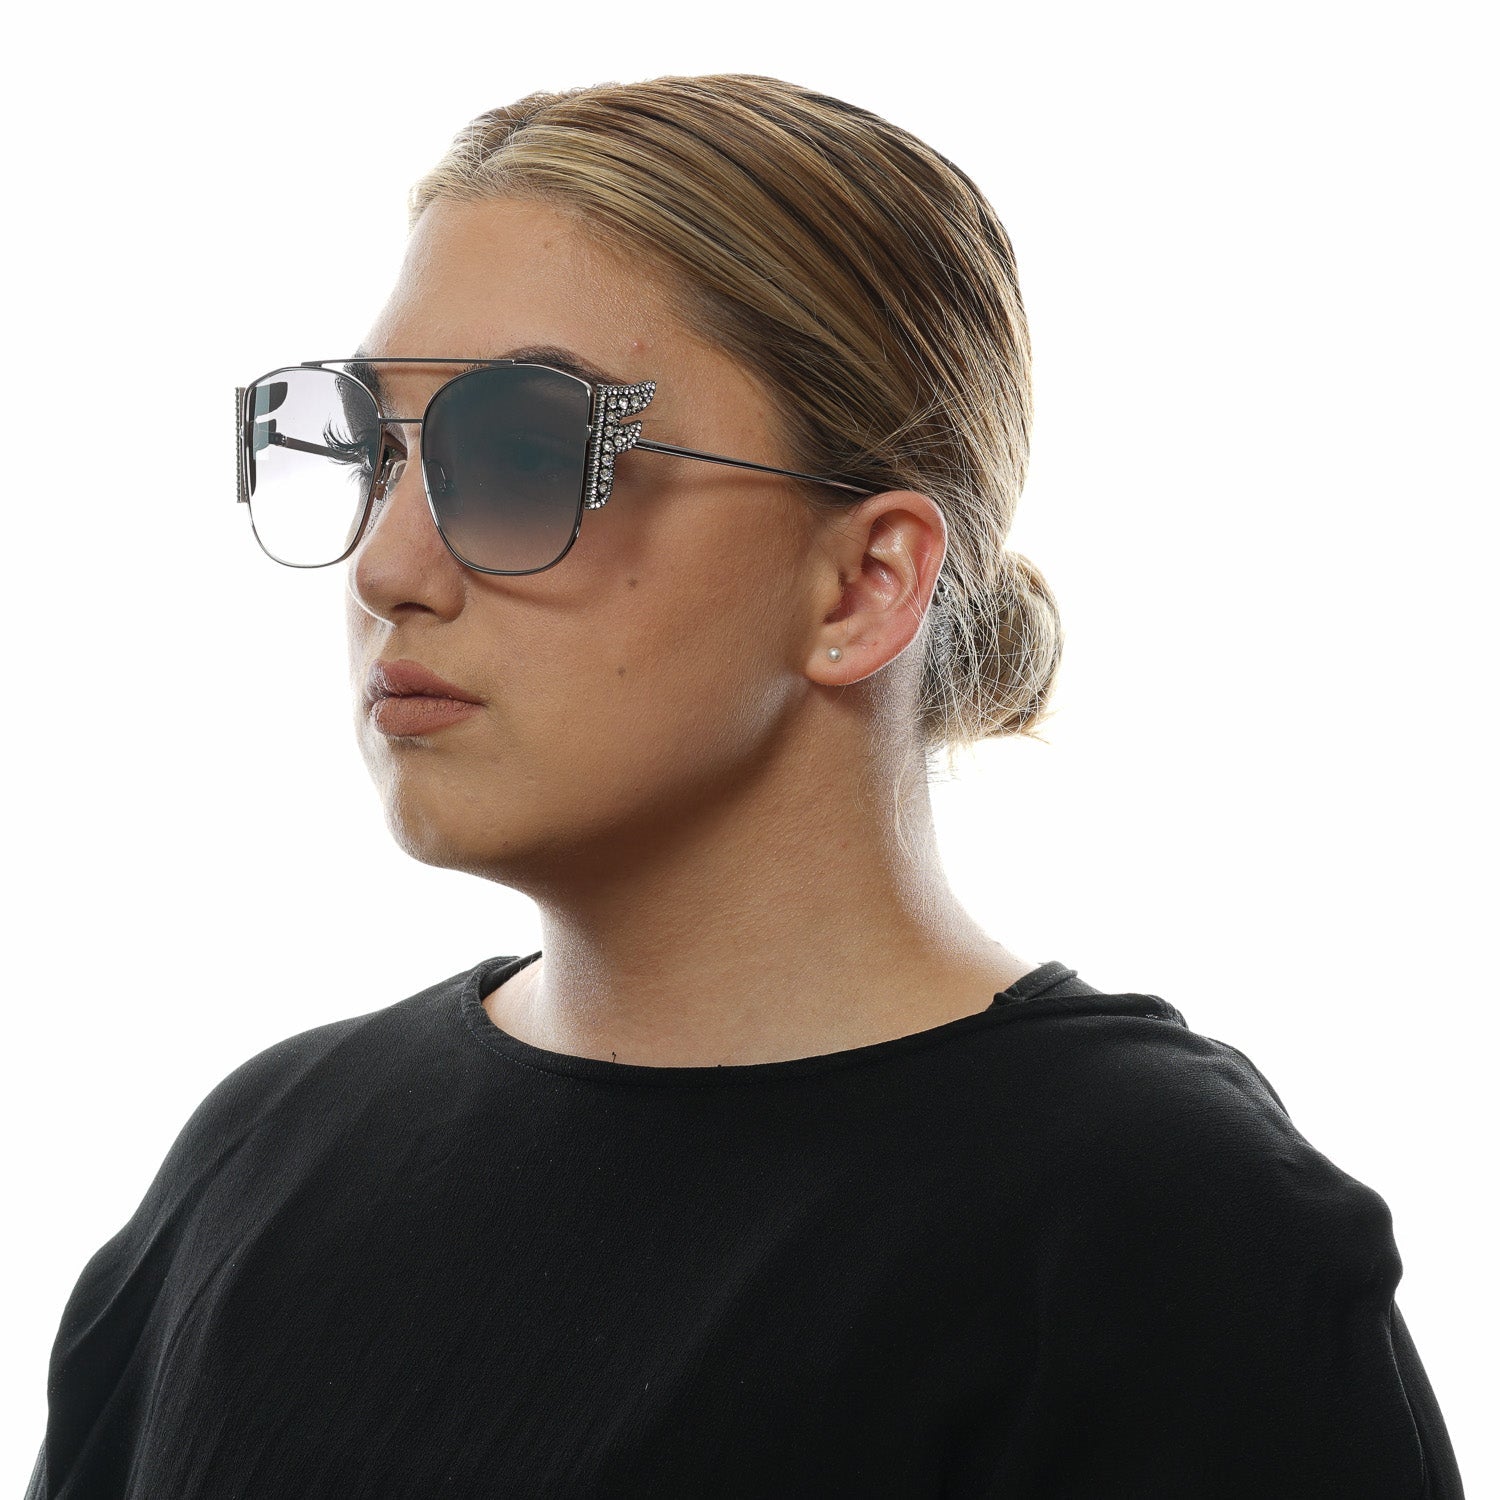 Fendi™ sunglasses  Sunglasses women designer, Fendi sunglasses